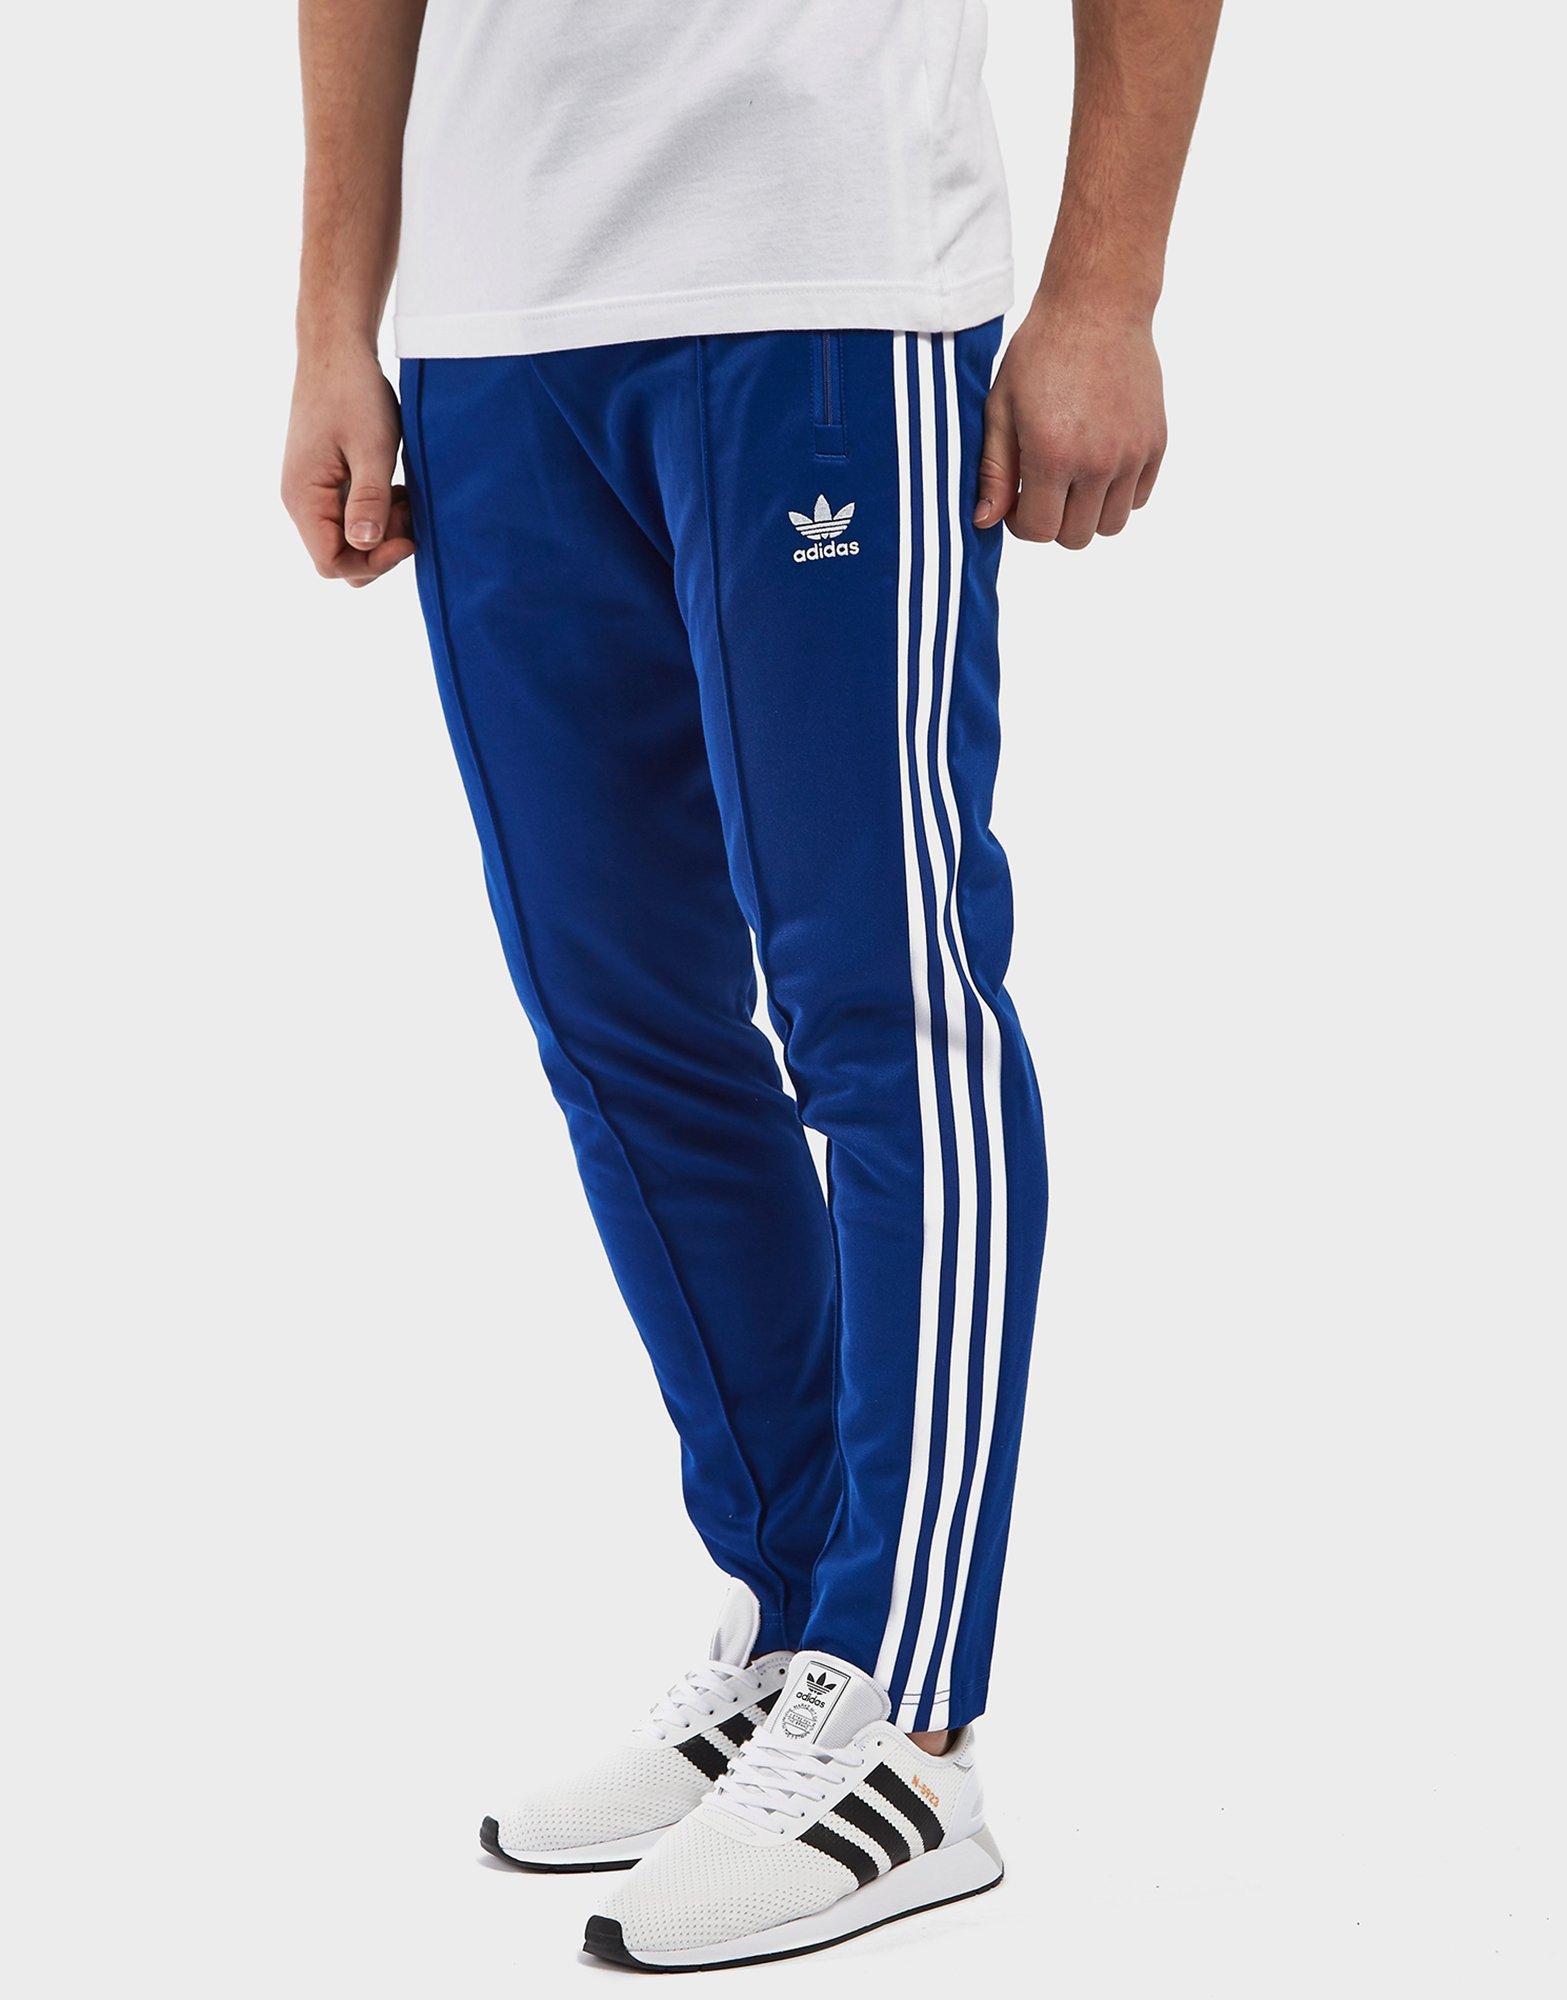 adidas beckenbauer pants blue